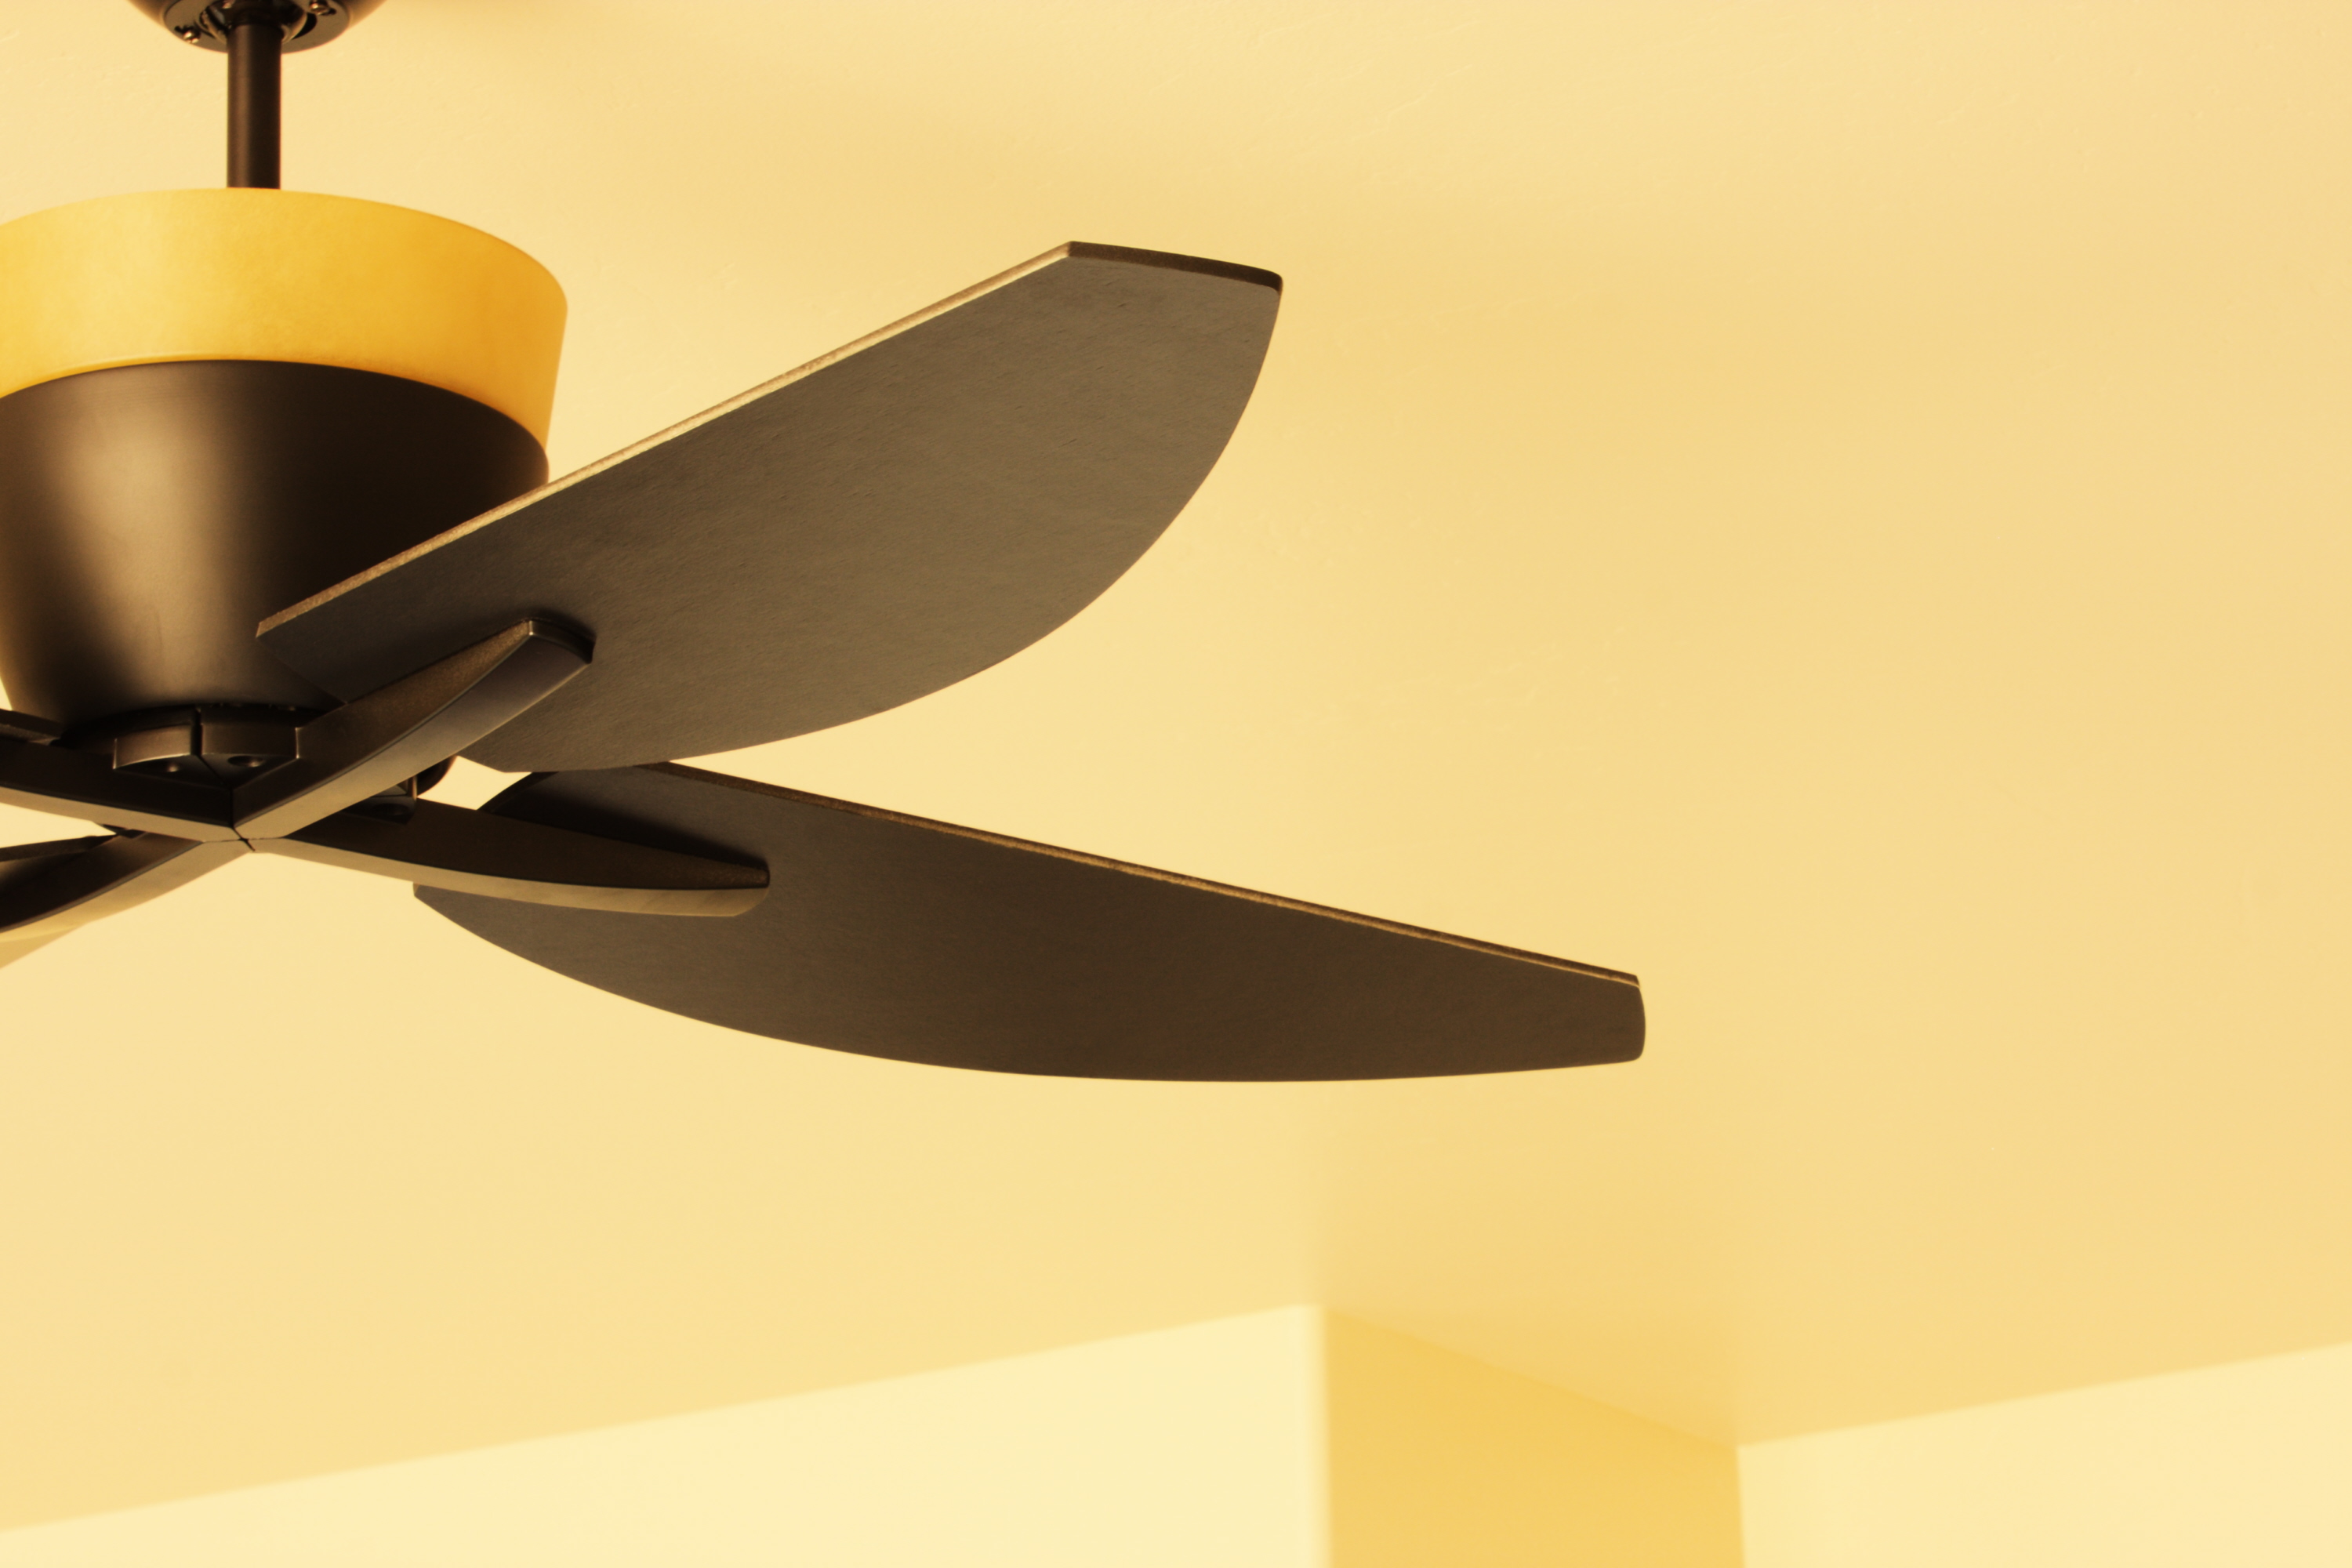 Blades of a ceiling fan